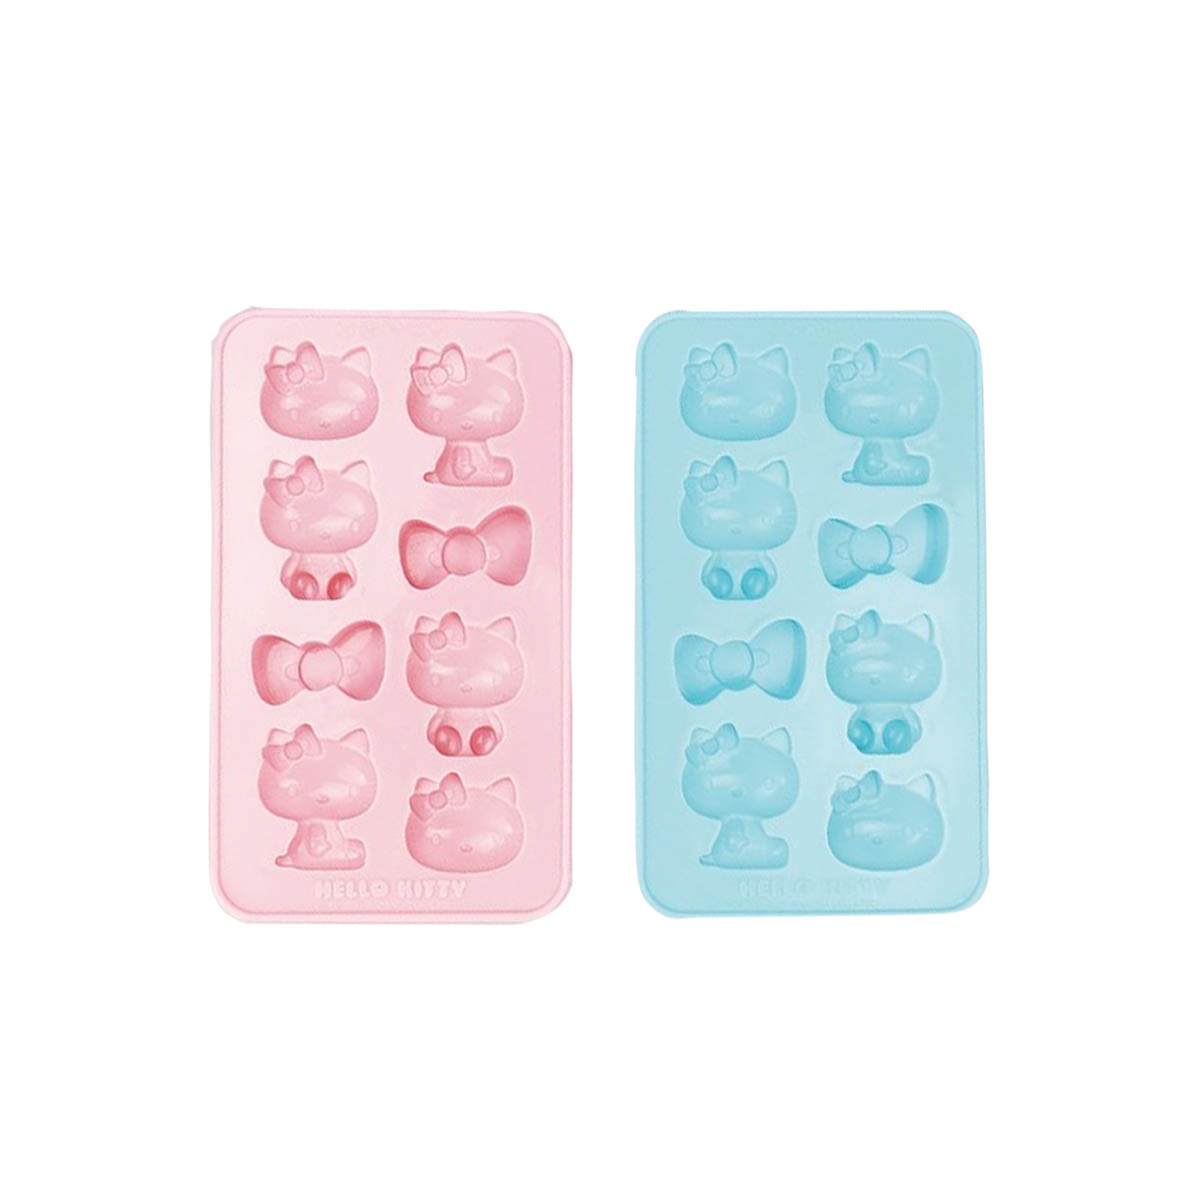 造型製冰盒-Hello Kitty 三麗鷗 Sanrio 正版授權